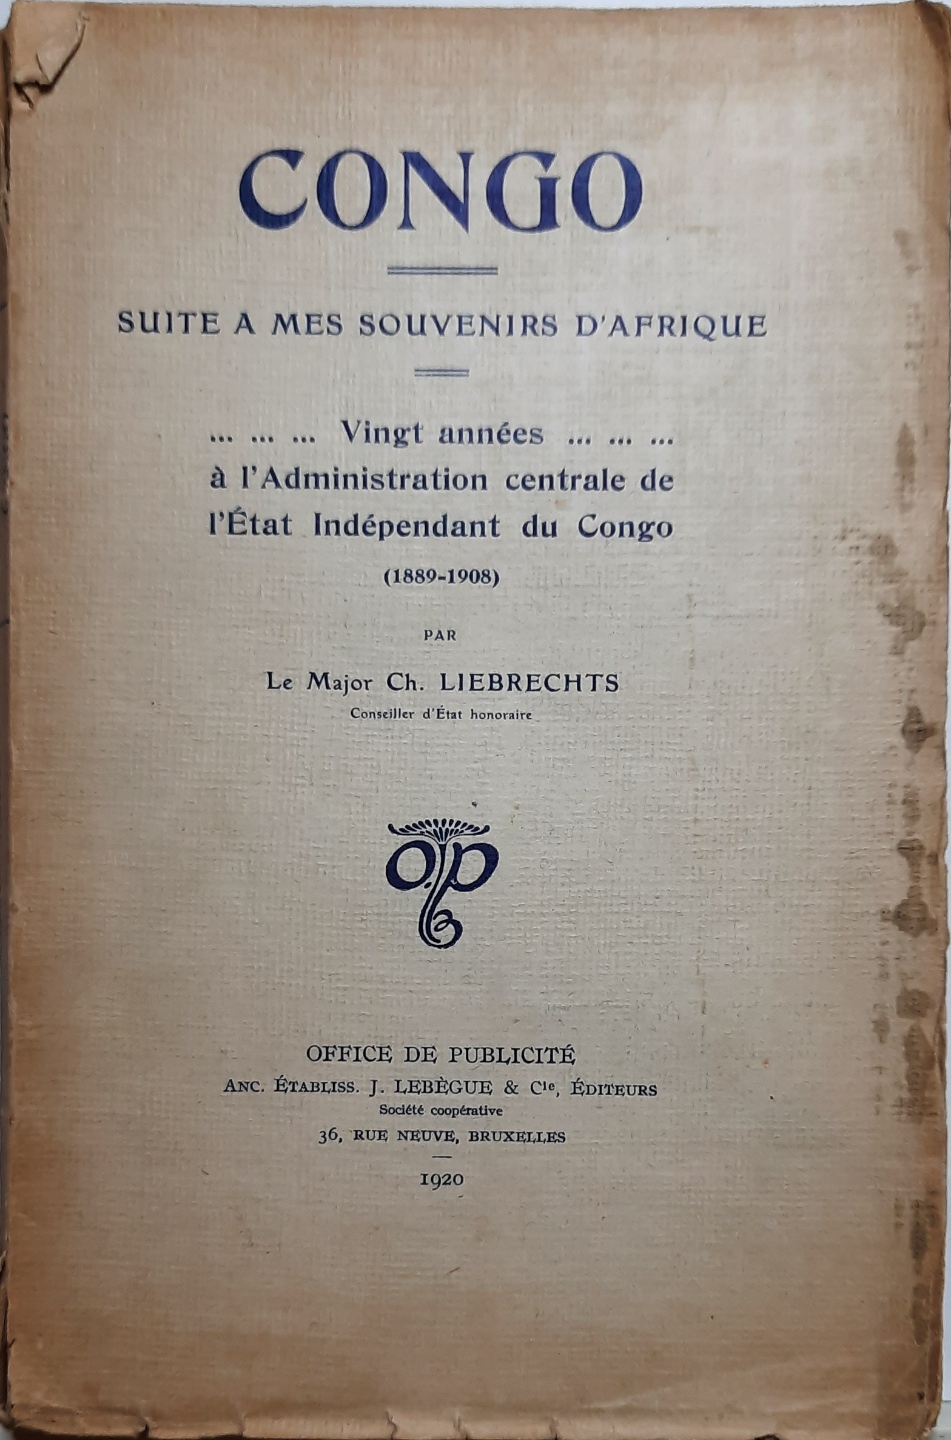 LIEBRECHTS Ch. le Major, Conseiller d'Etat Honoraire - Congo - Suite  mes souvenirs d'Afrique - Vingt annes  l'Administration centrale de l'Etat Indpendant du Congo (1889-1908)